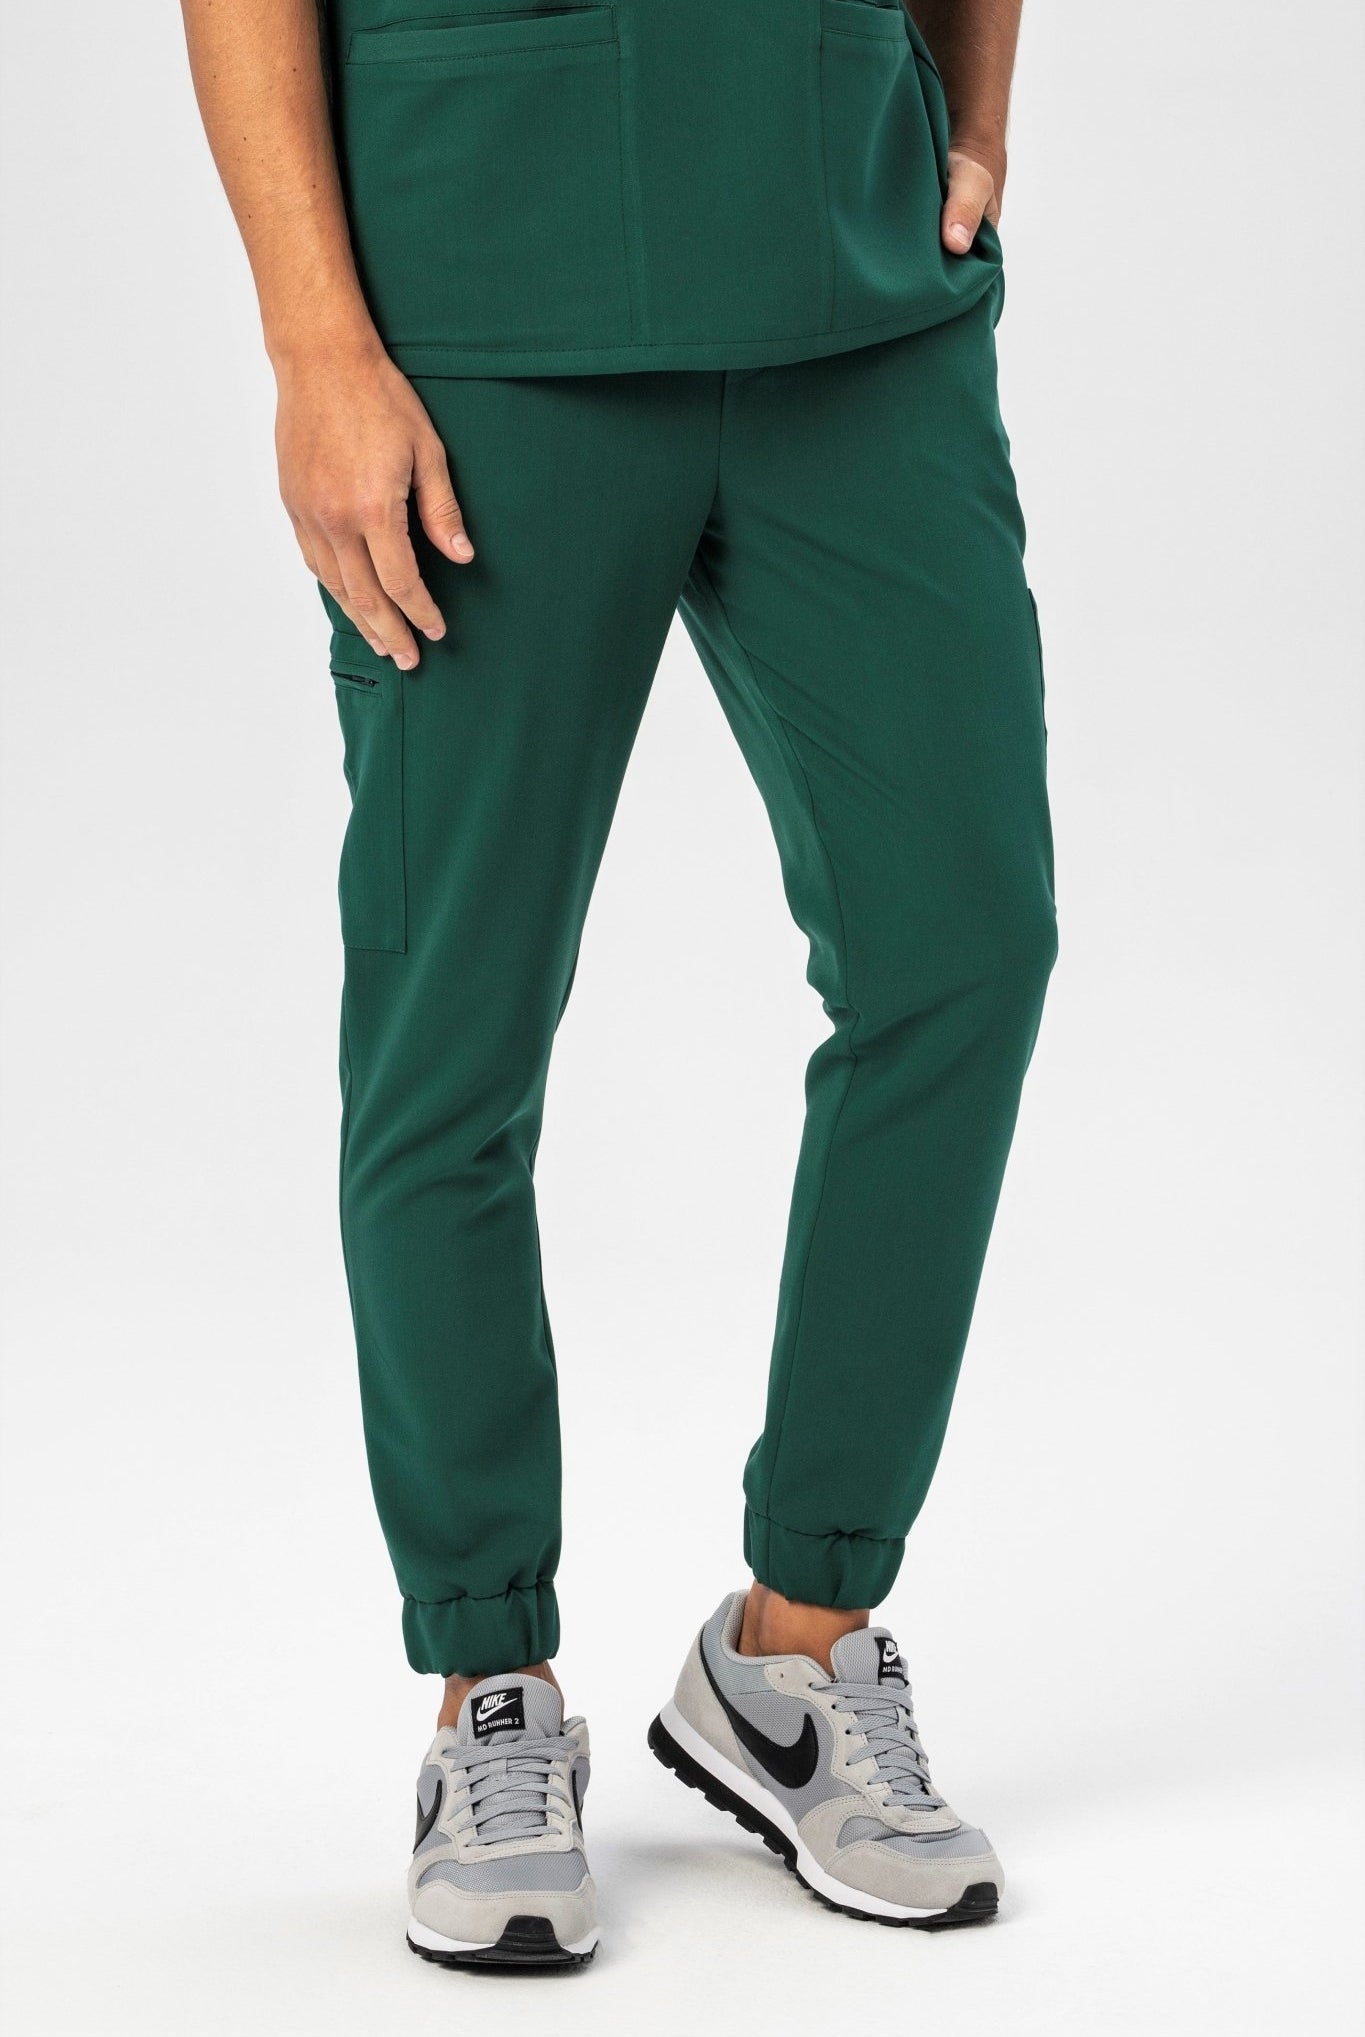 Spodnie medyczne męskie Pace - kolor zielony